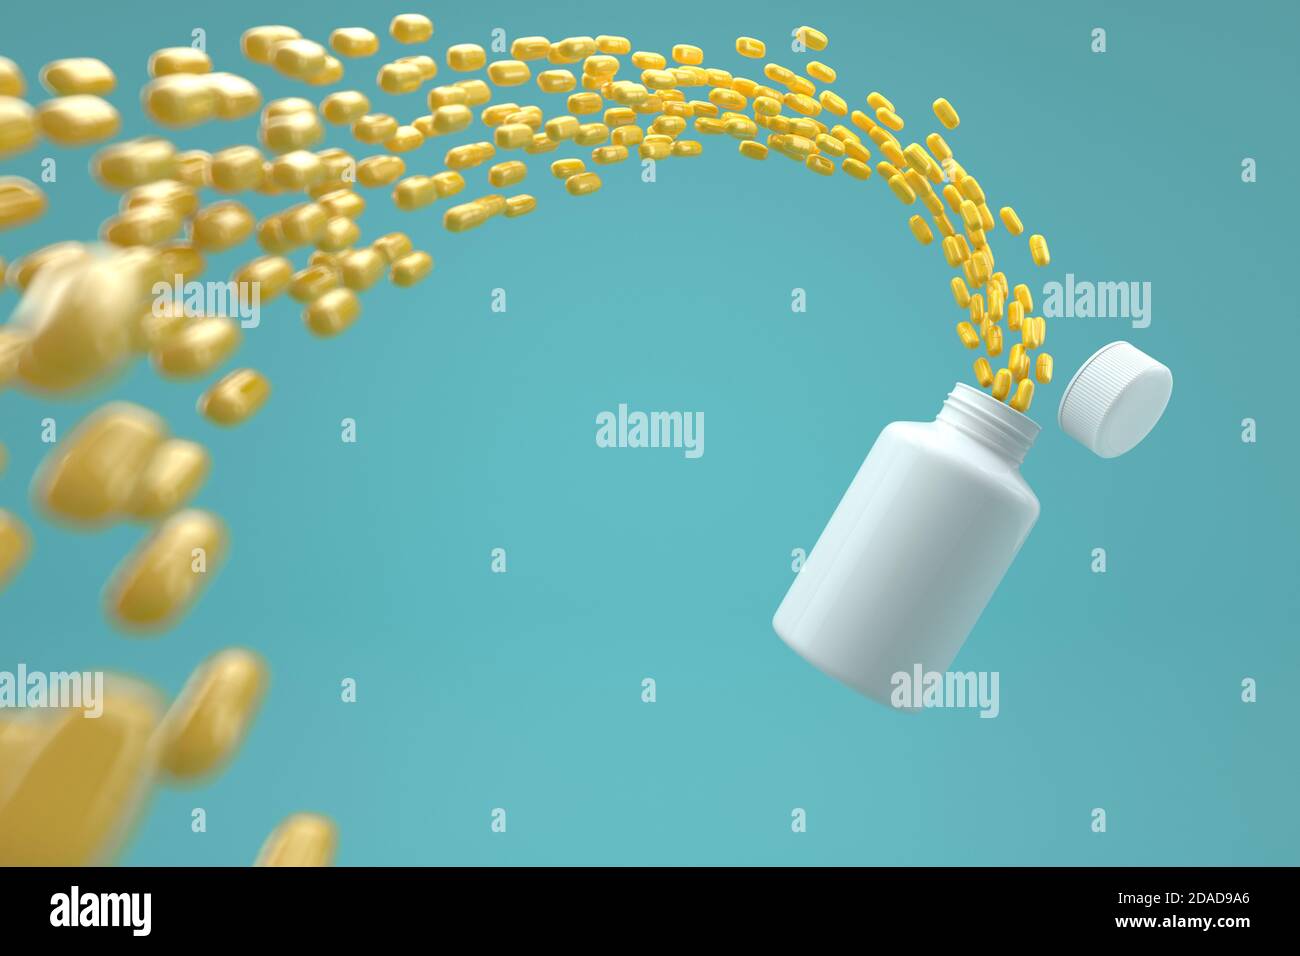 Illustrazione in 3D di pillole gialle con boccetta di plastica bianca su (tracciato di ritaglio o percorso di lavoro inclusi) Foto Stock